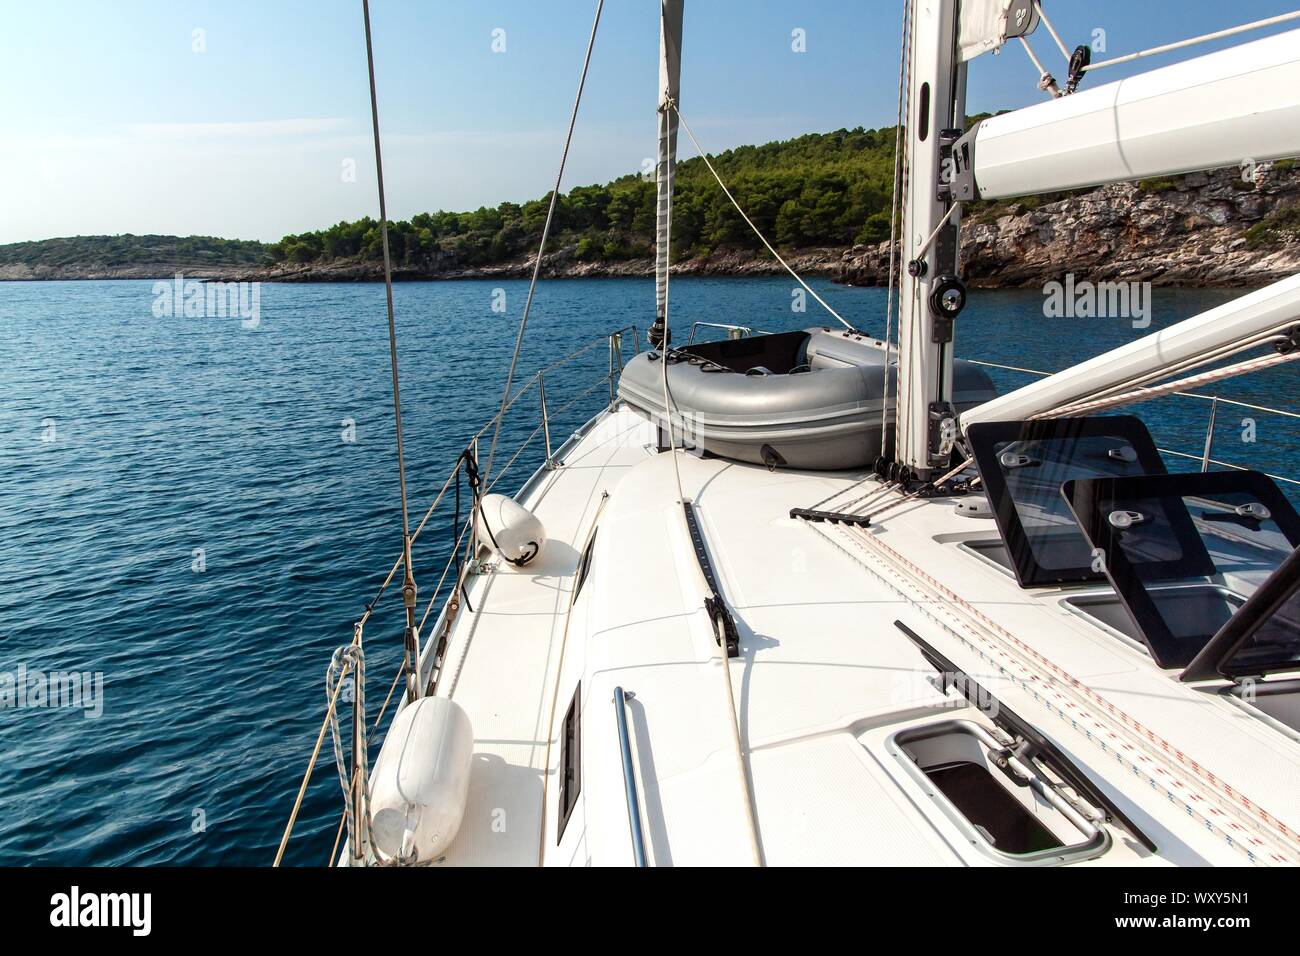 Vacanze a vela in Croazia. Il romanticismo di yachting. Barca a vela sul mare nei pressi di isole croate. Yacht deck. Crociera avventura. Foto Stock